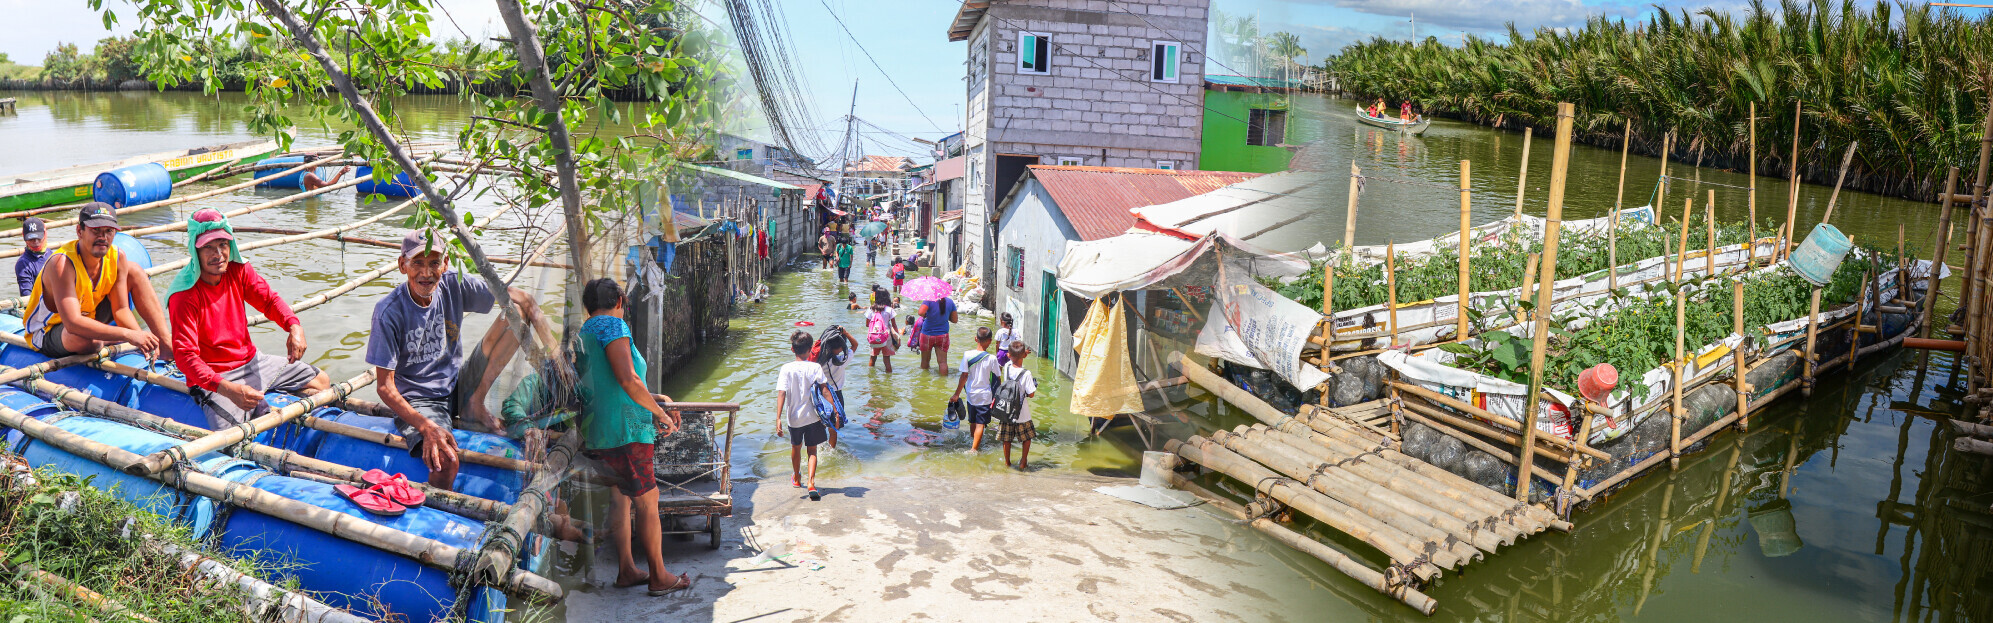 Das Hilfsprojekt von AWO International unterstützt bei Überschwemmungen auf den Philippinen